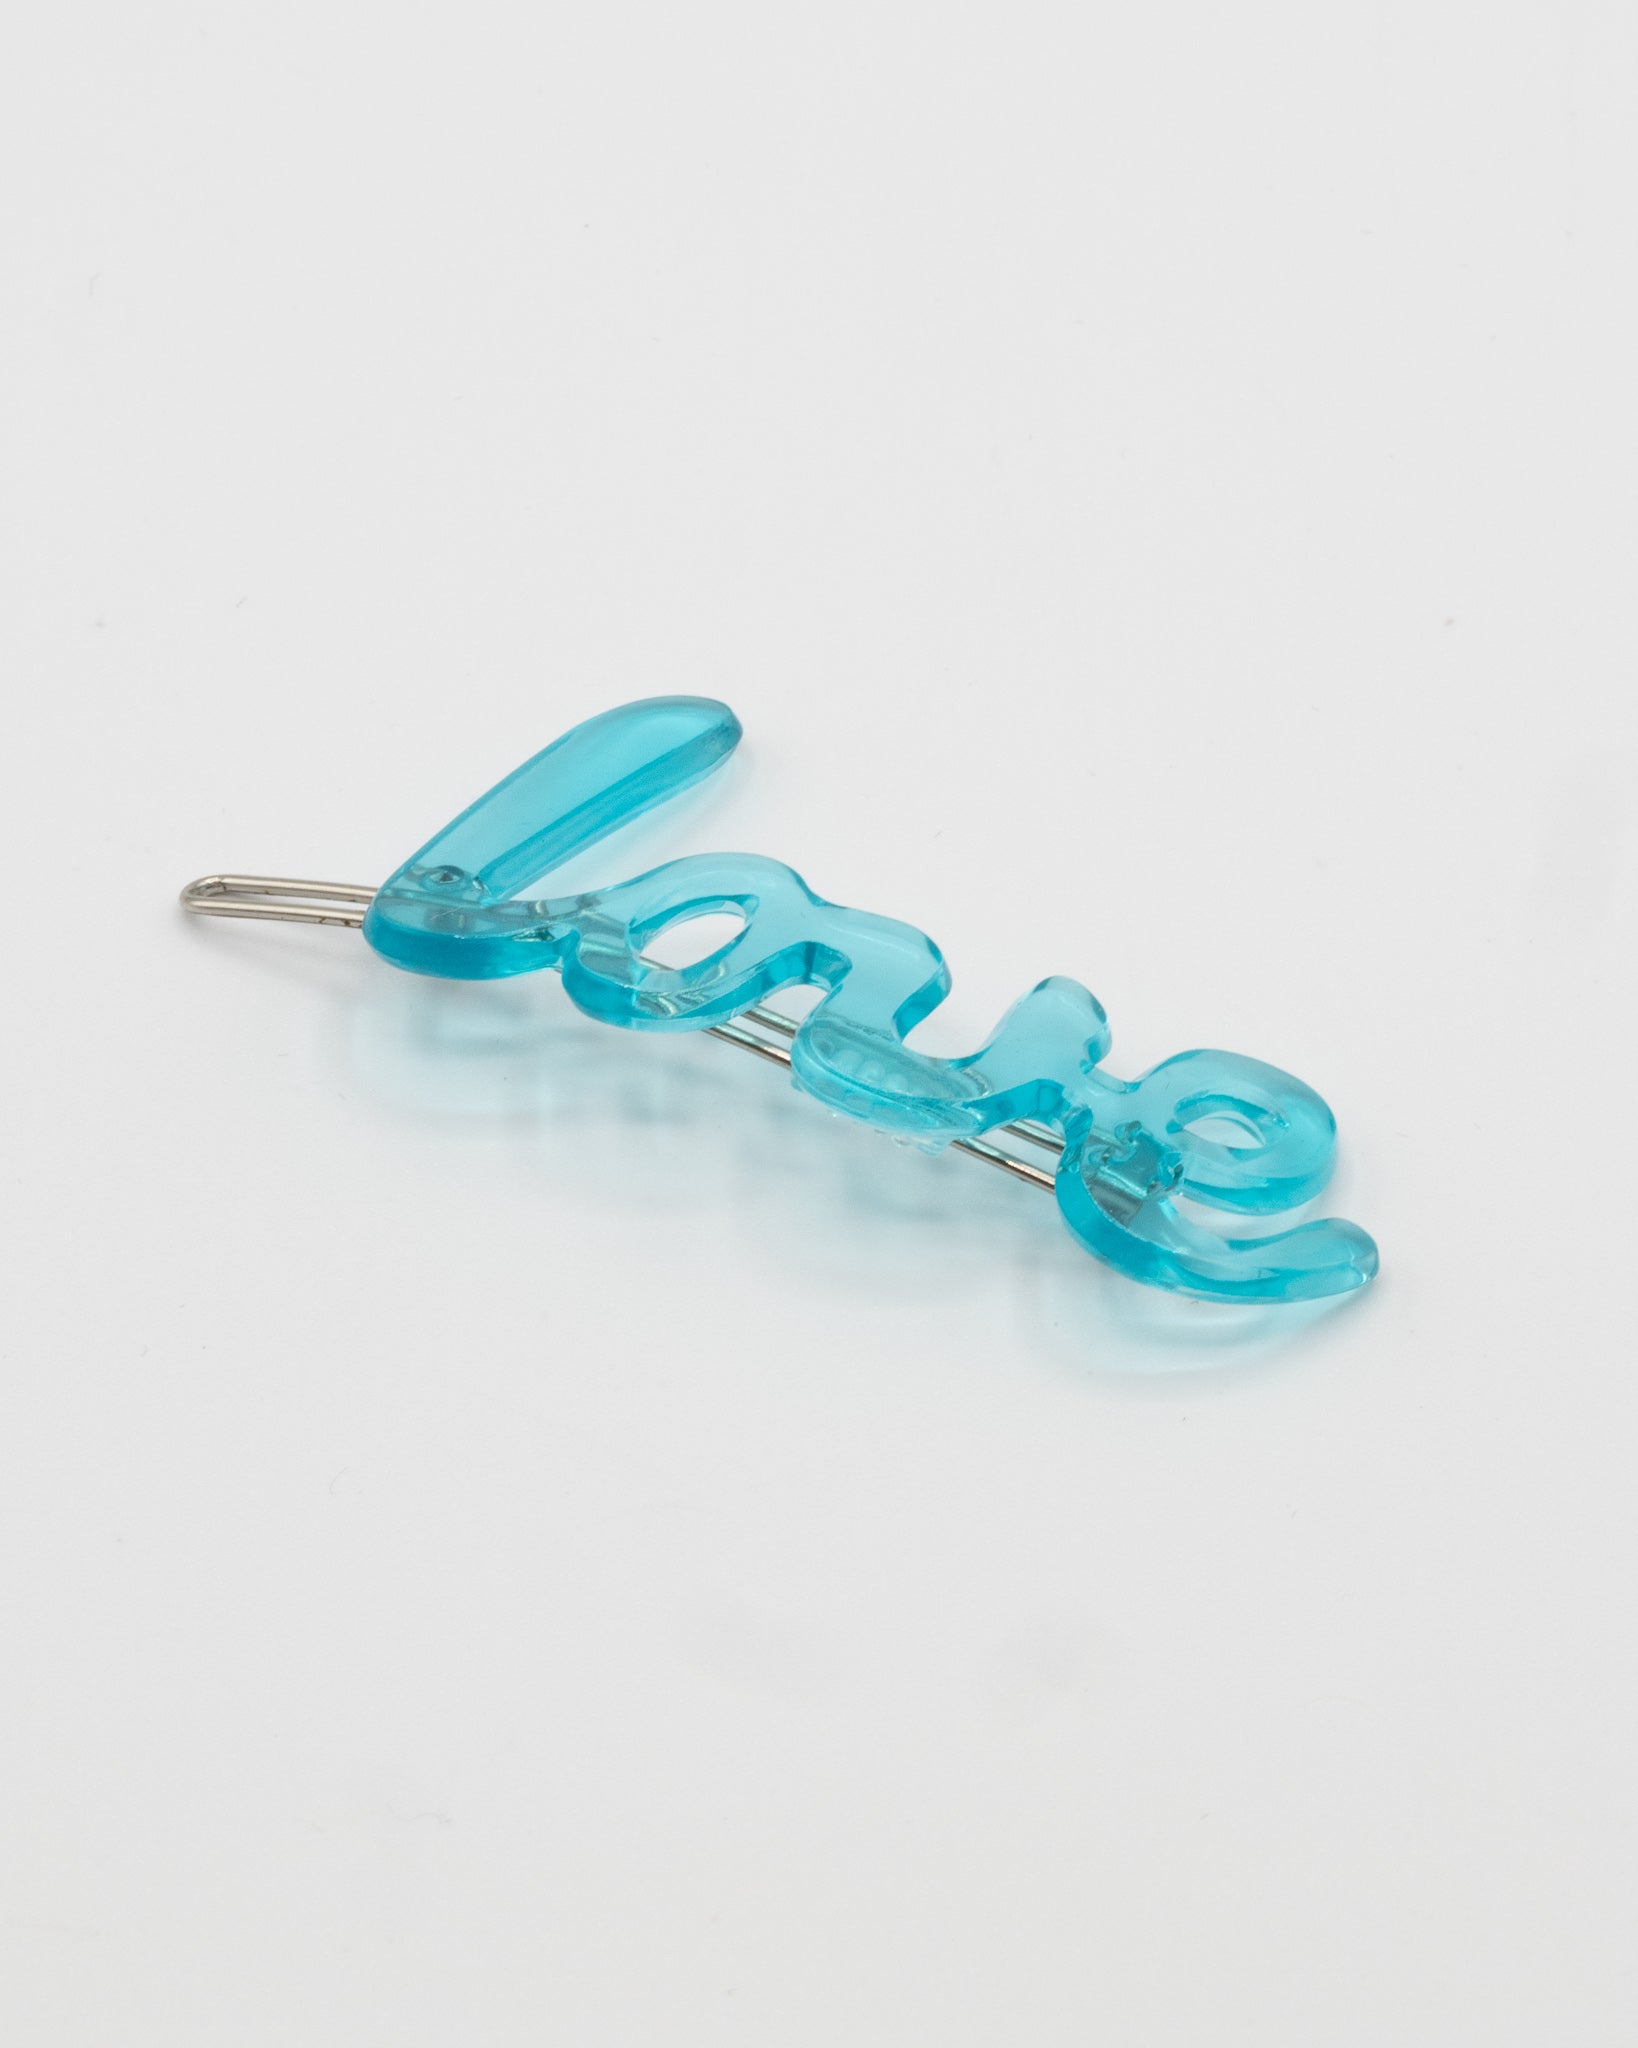 Blue 'Love' Hair Clip - Bad Handwriting